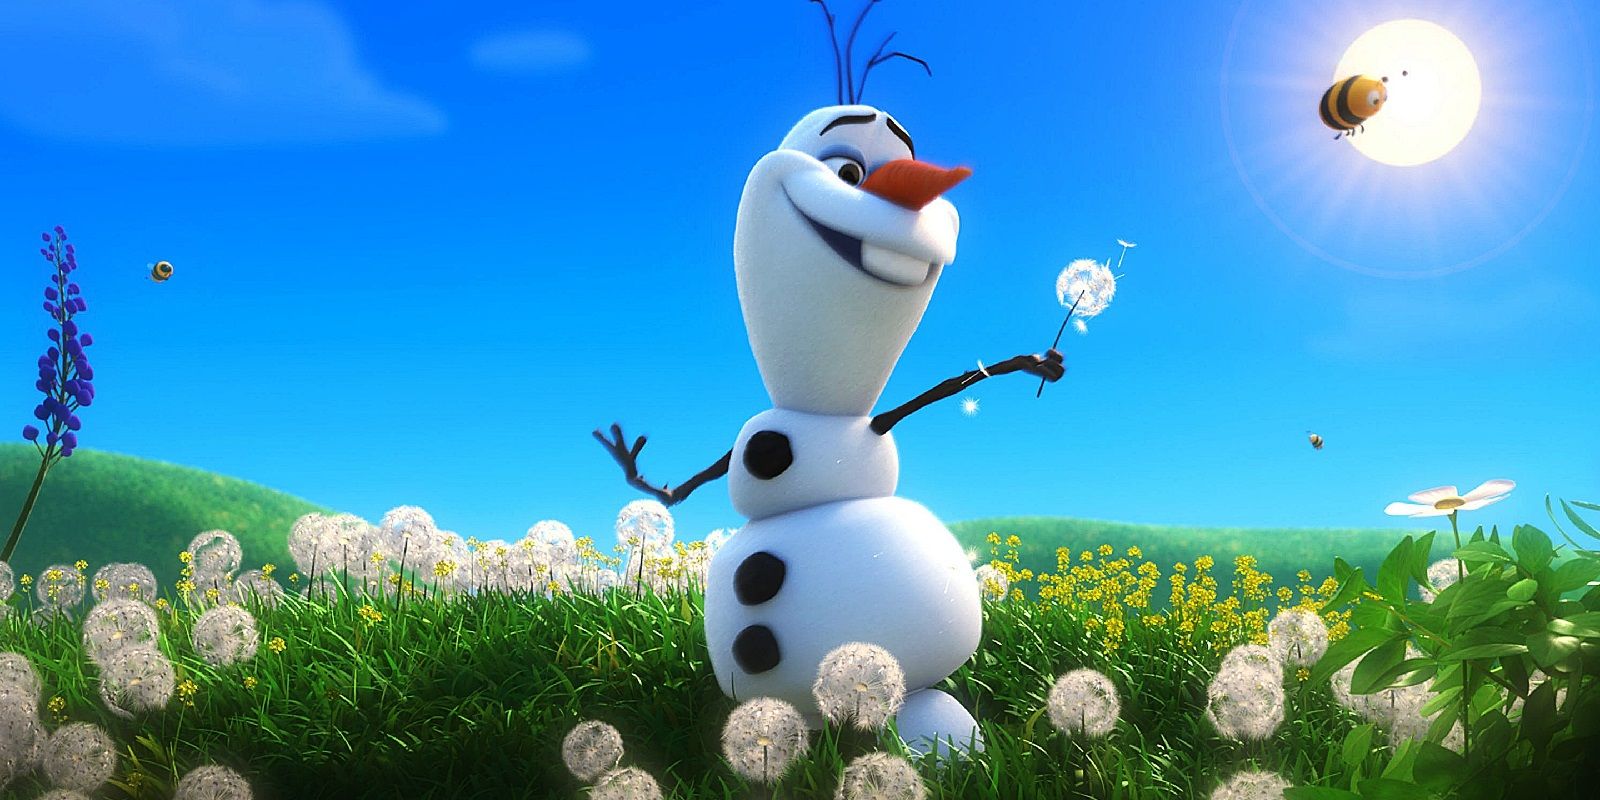 10 Things About Frozen that Make No Sense